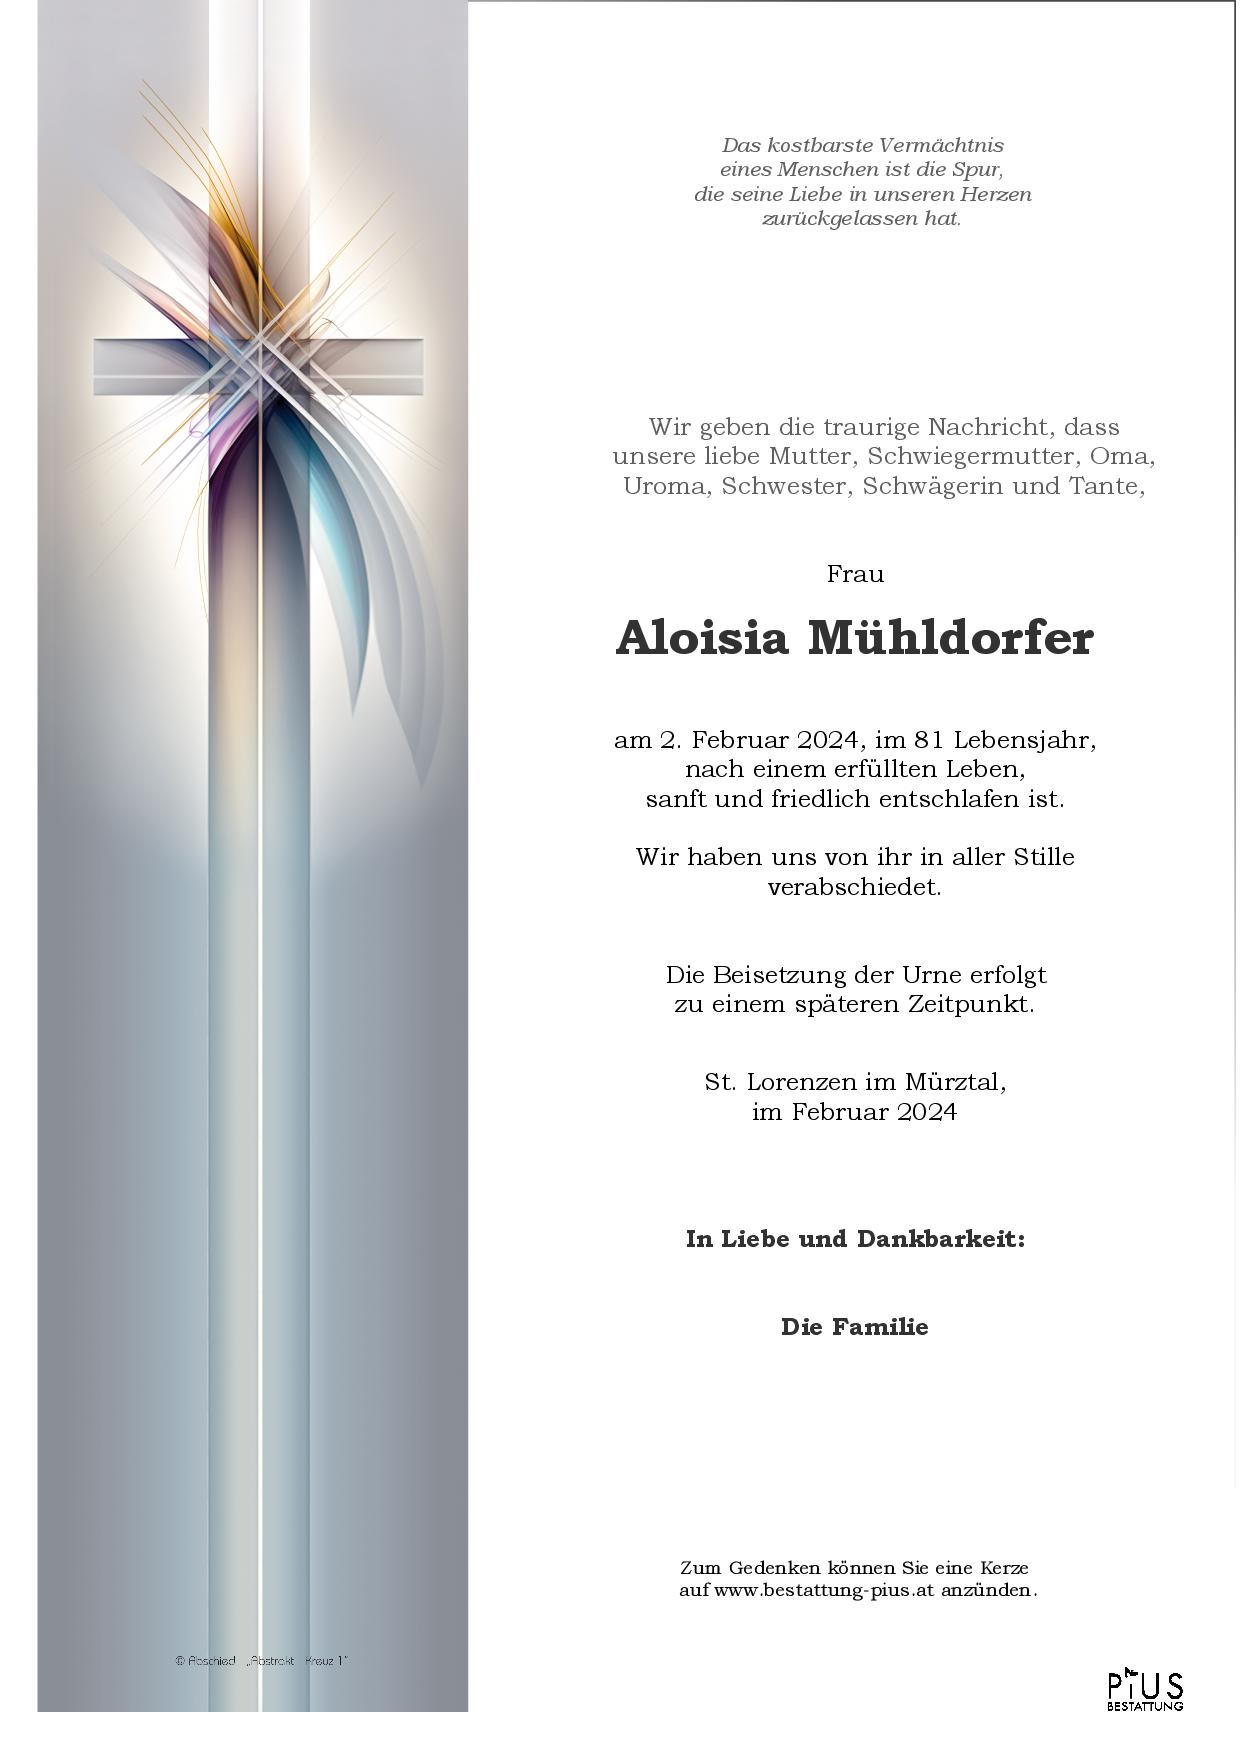 Aloisia Mühldorfer